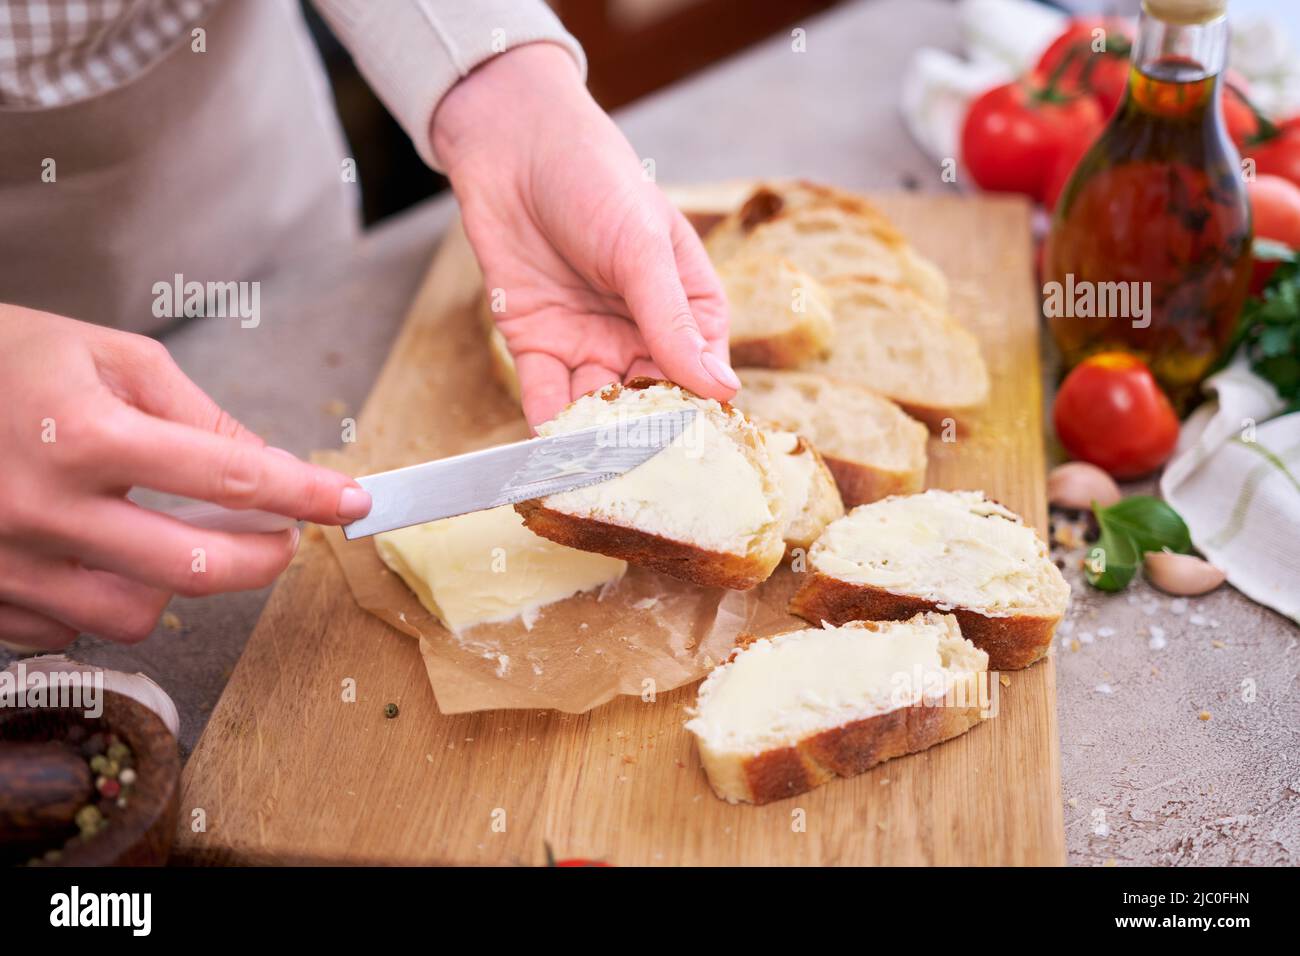 Donna che spalma il gustoso burro organico sul pane sopra la tavola grigia con tagliere in legno Foto Stock